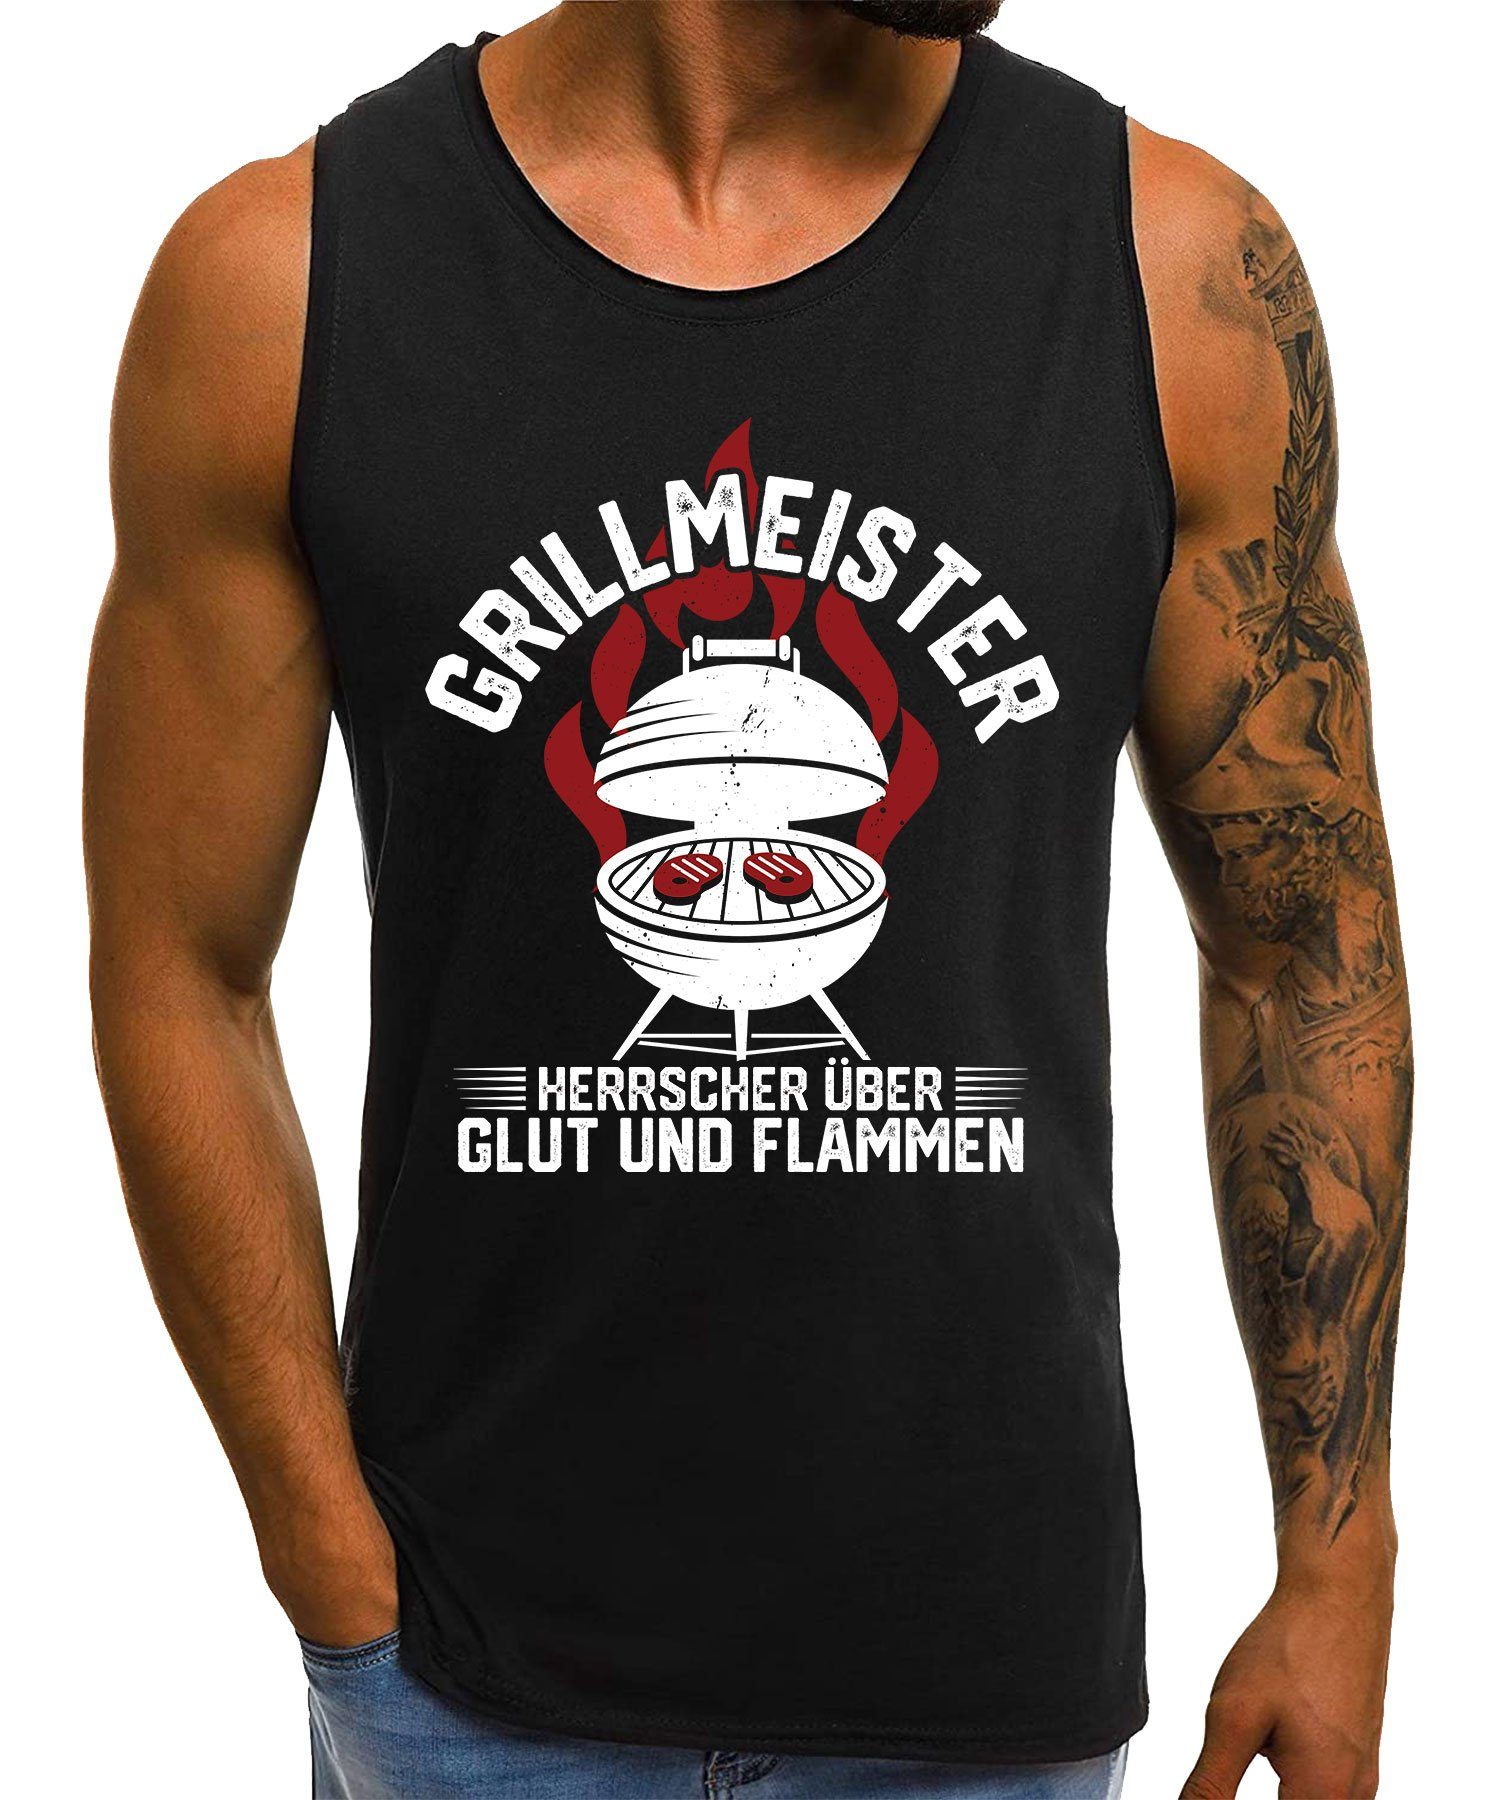 Quattro Formatee Achselhemd Grillmeister Grillen Glut Flammen - Lustiger Spruch Statement Herren (1-St)